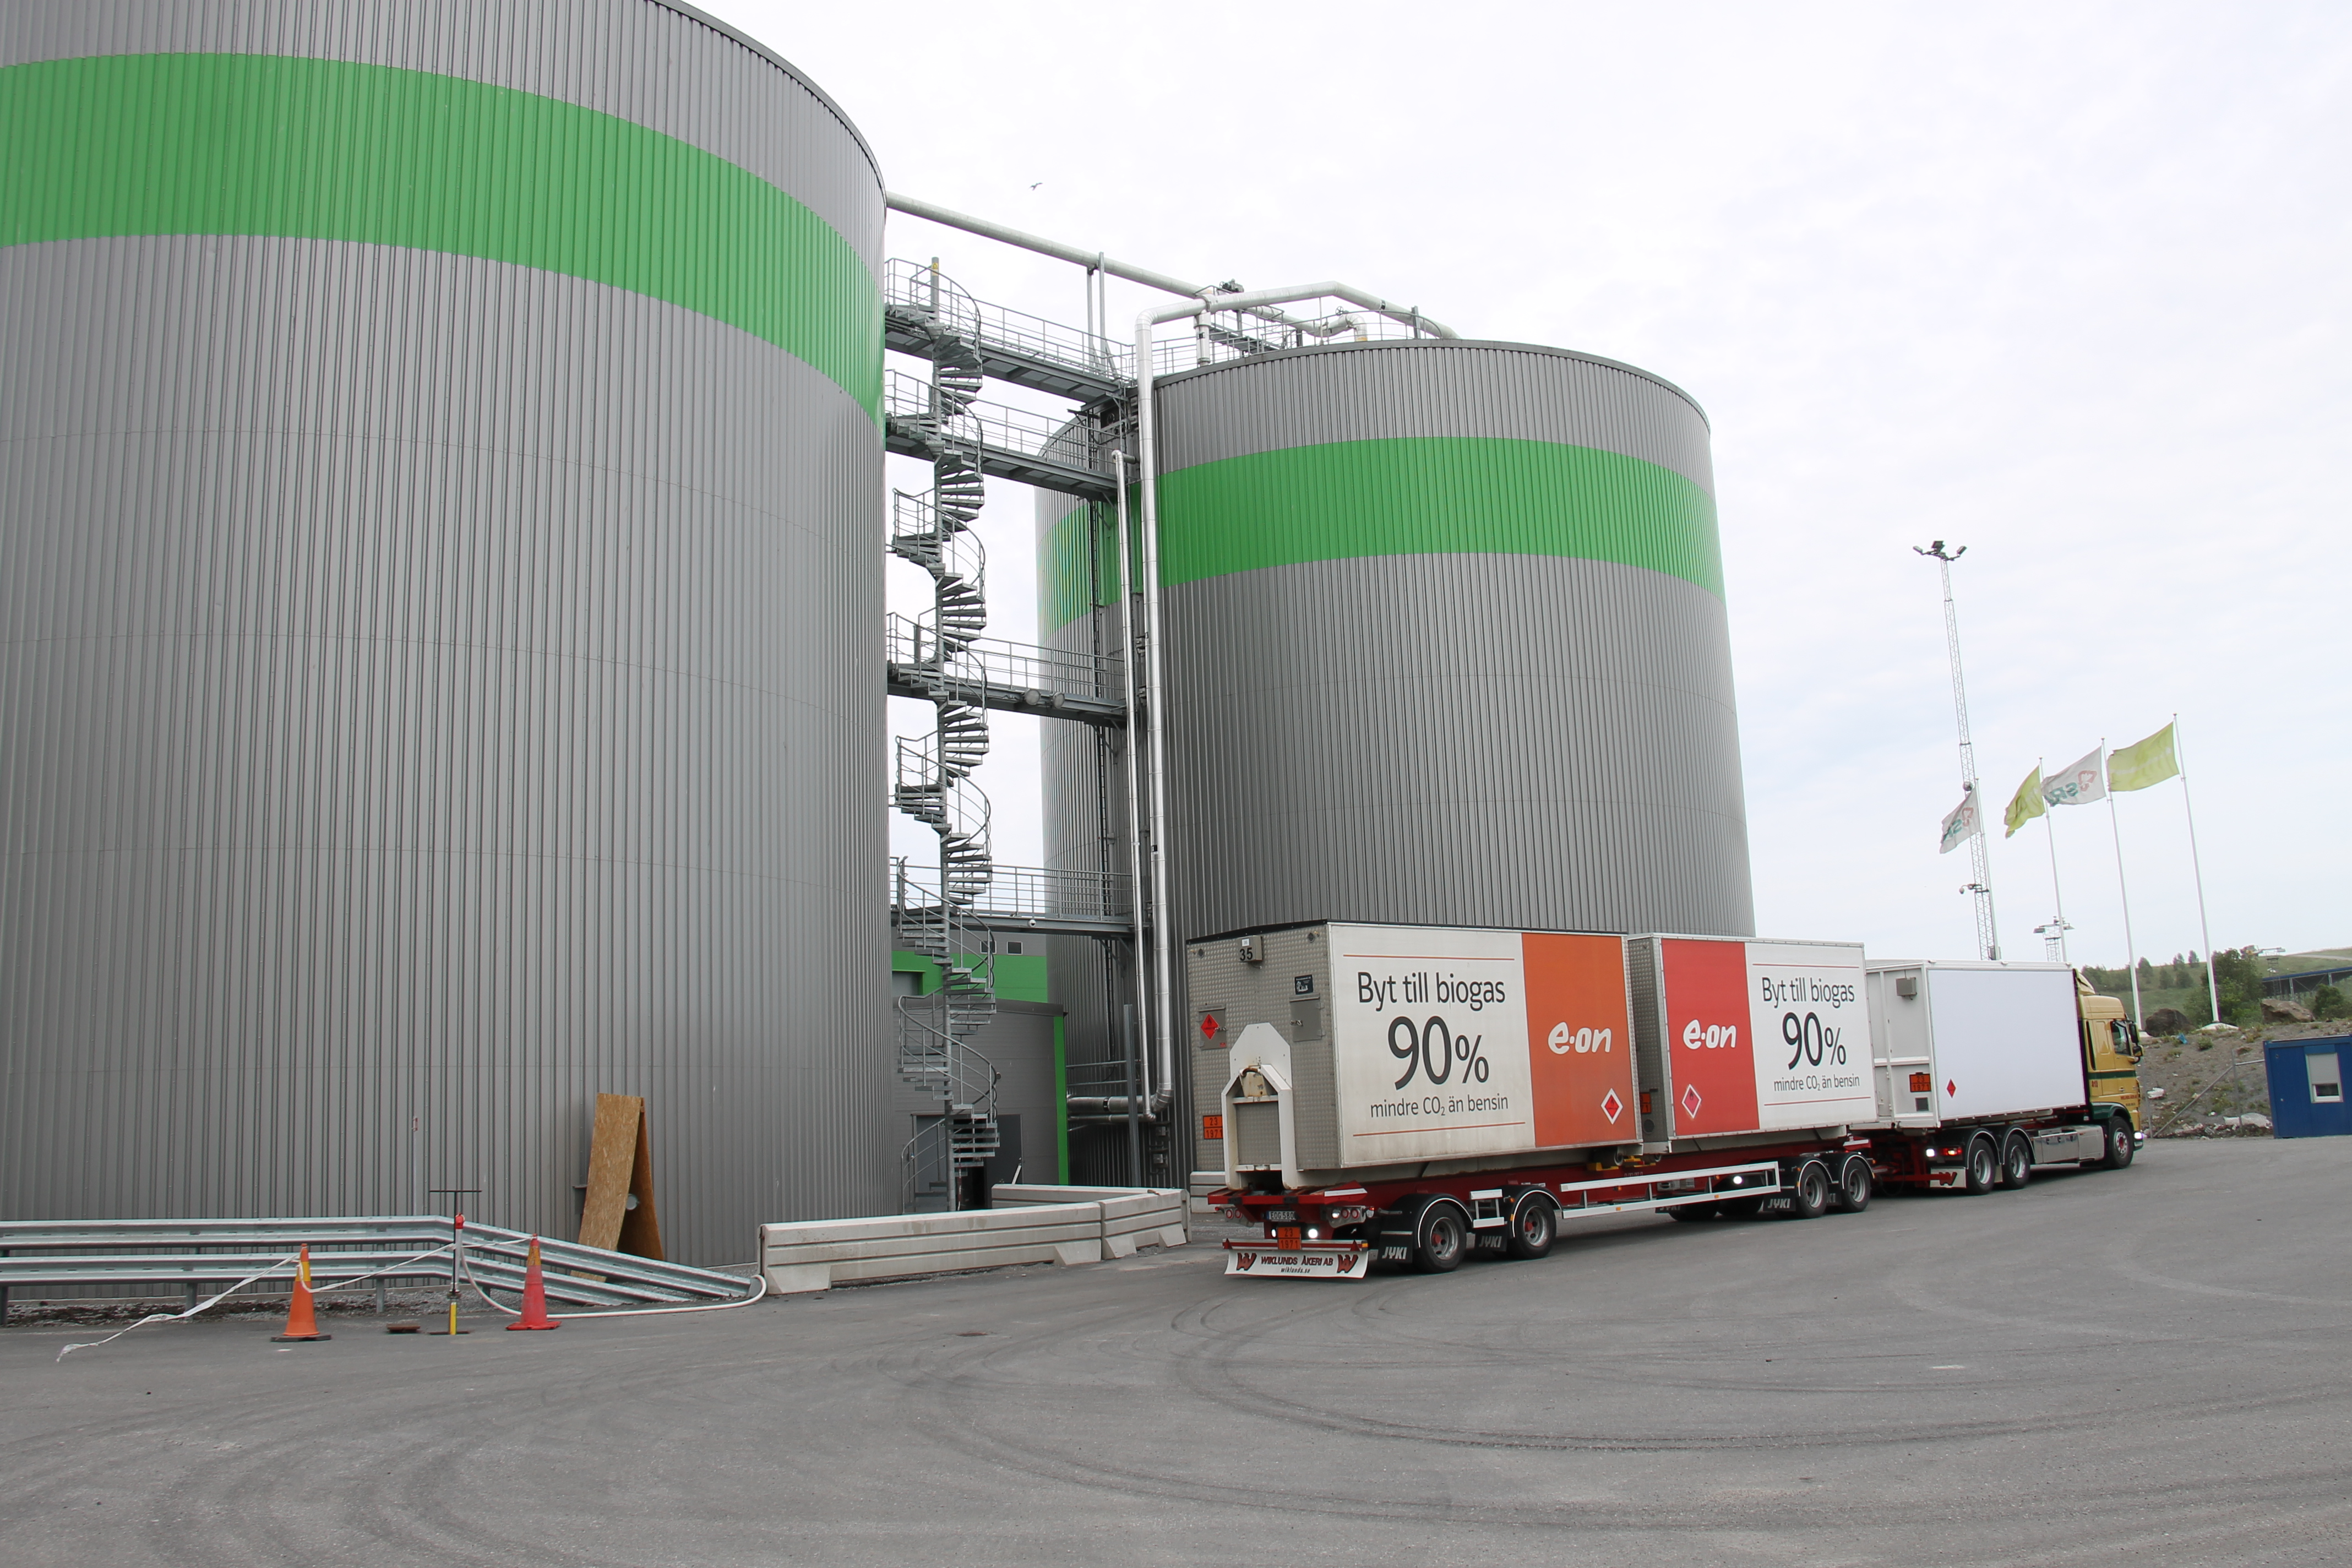 Os biodigestores da Scandinavian Biogas são capazes de processar 70 mil toneladas de resíduos alimentares para gerar biometano para ônibus, carros e caminhões